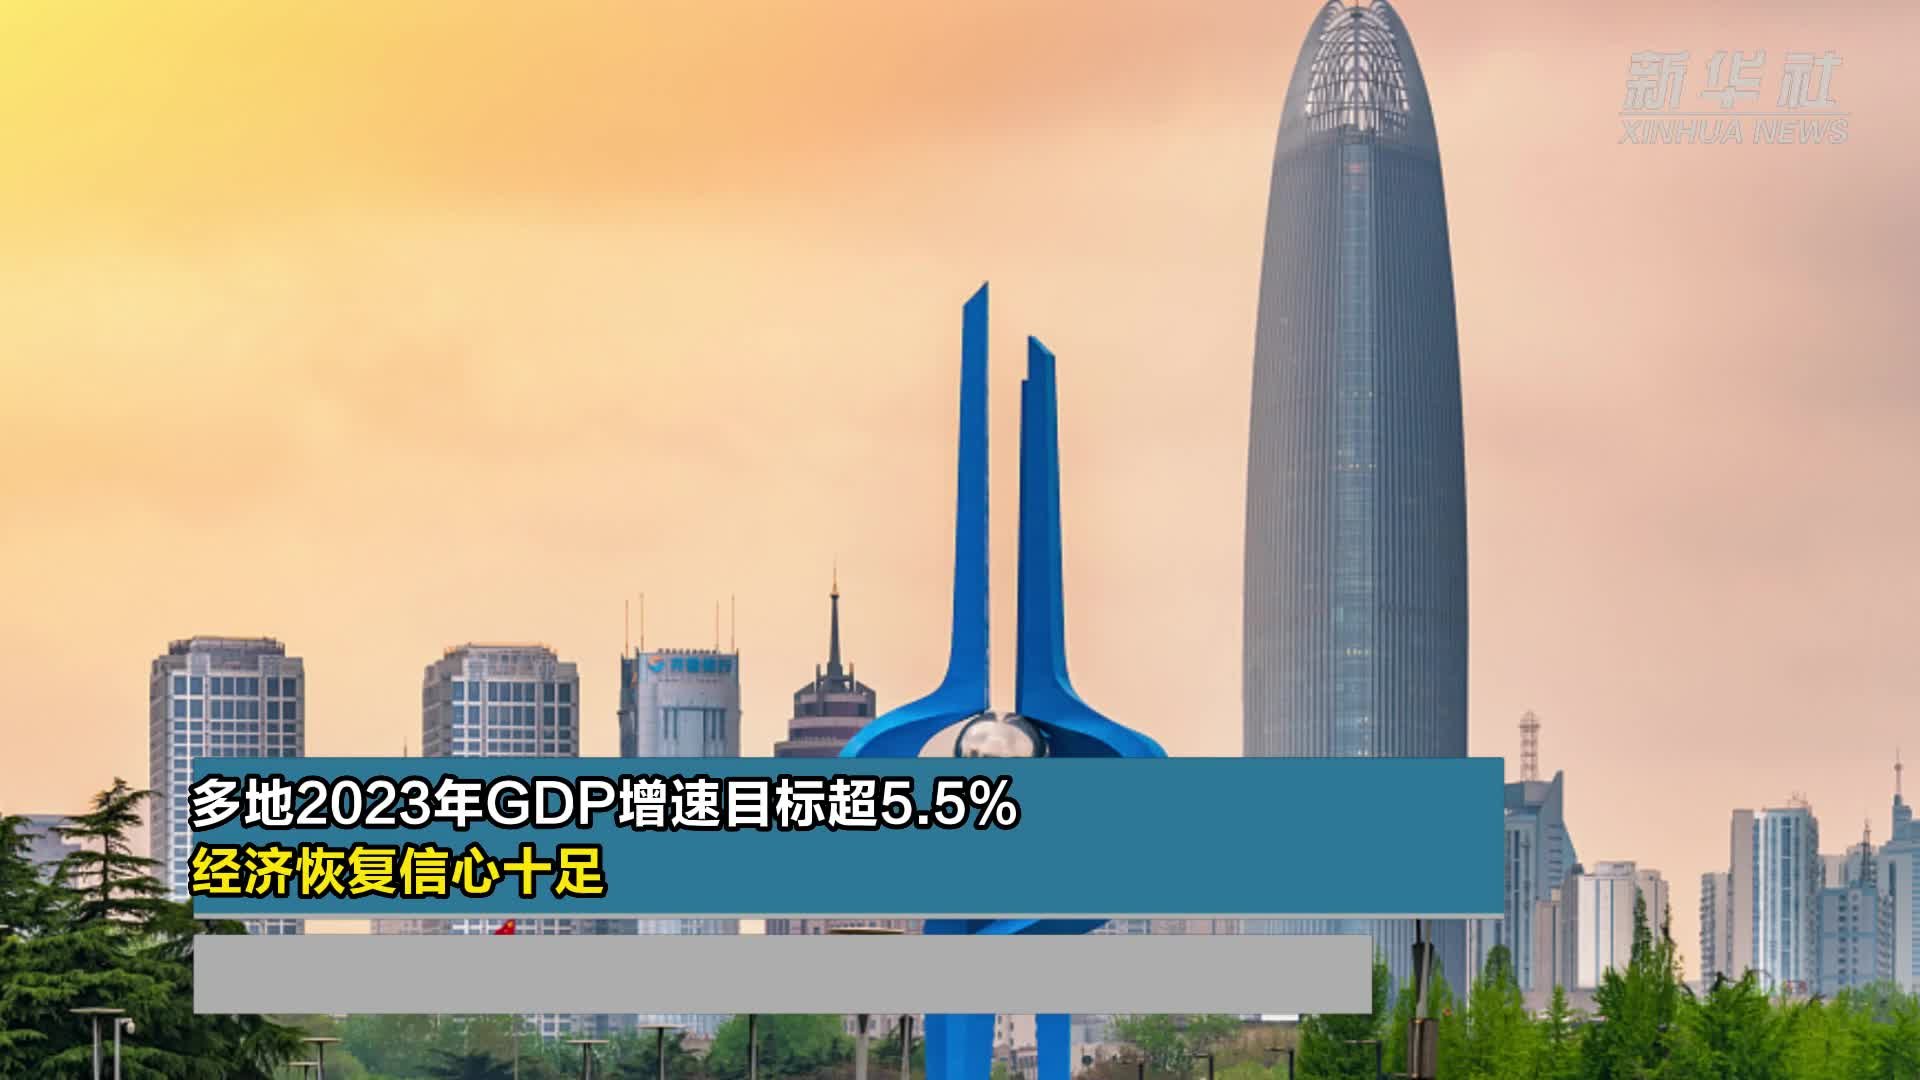 多地2023年GDP增速目标超5.5% 经济恢复信心十足